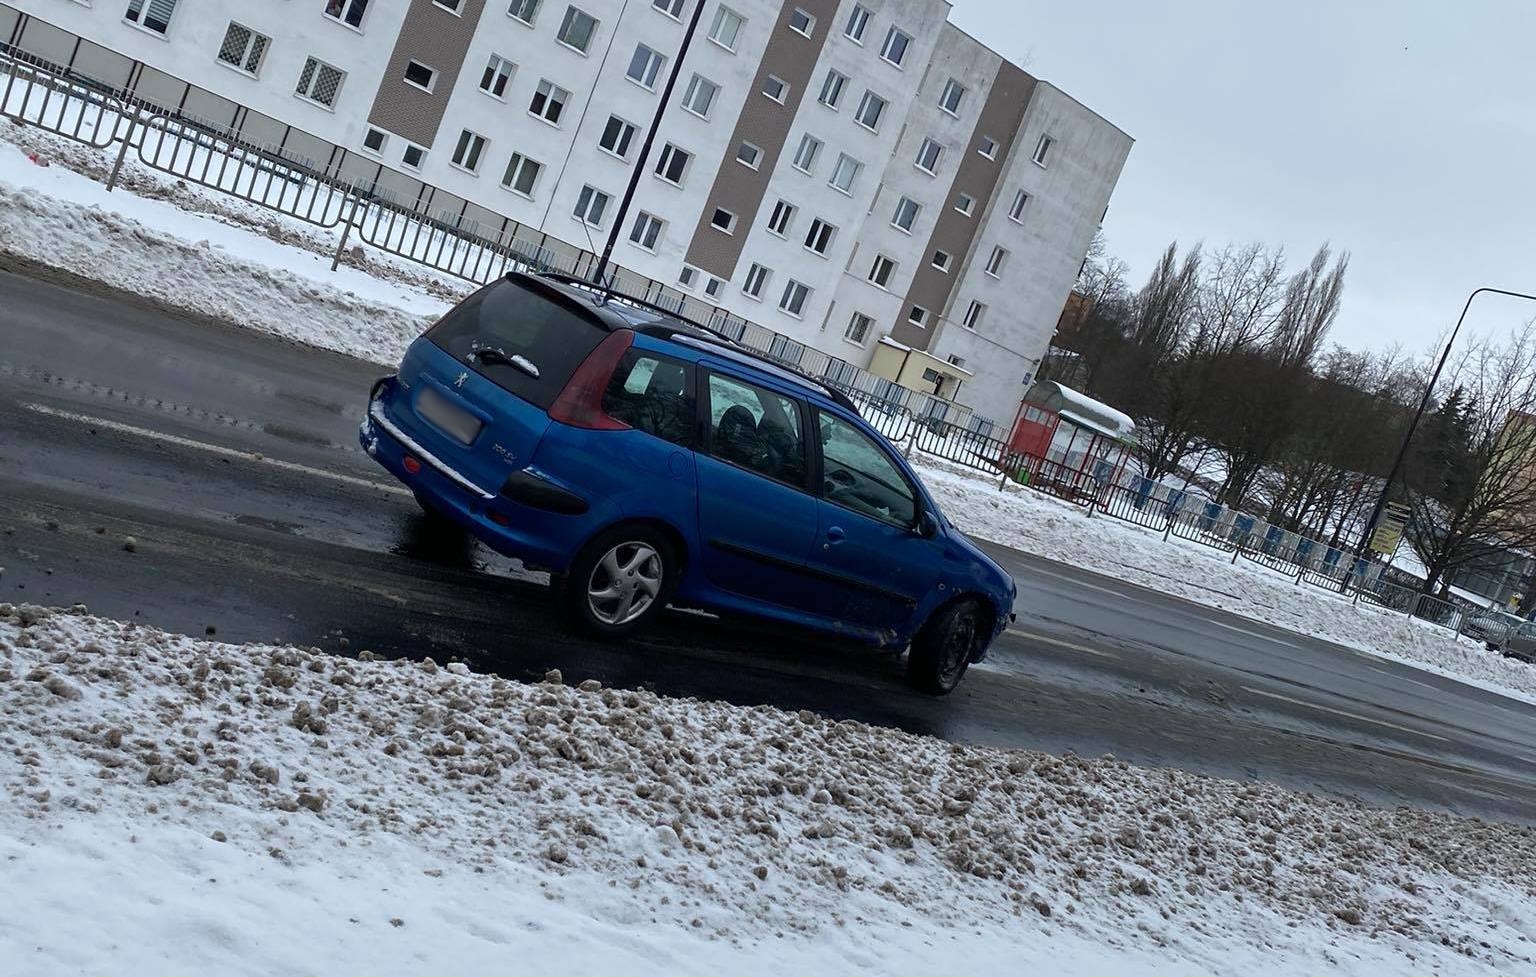 Groźne zdarzenie drogowe w Lublinie. Jeden z pojazdów uderzył w słup (zdjęcia)